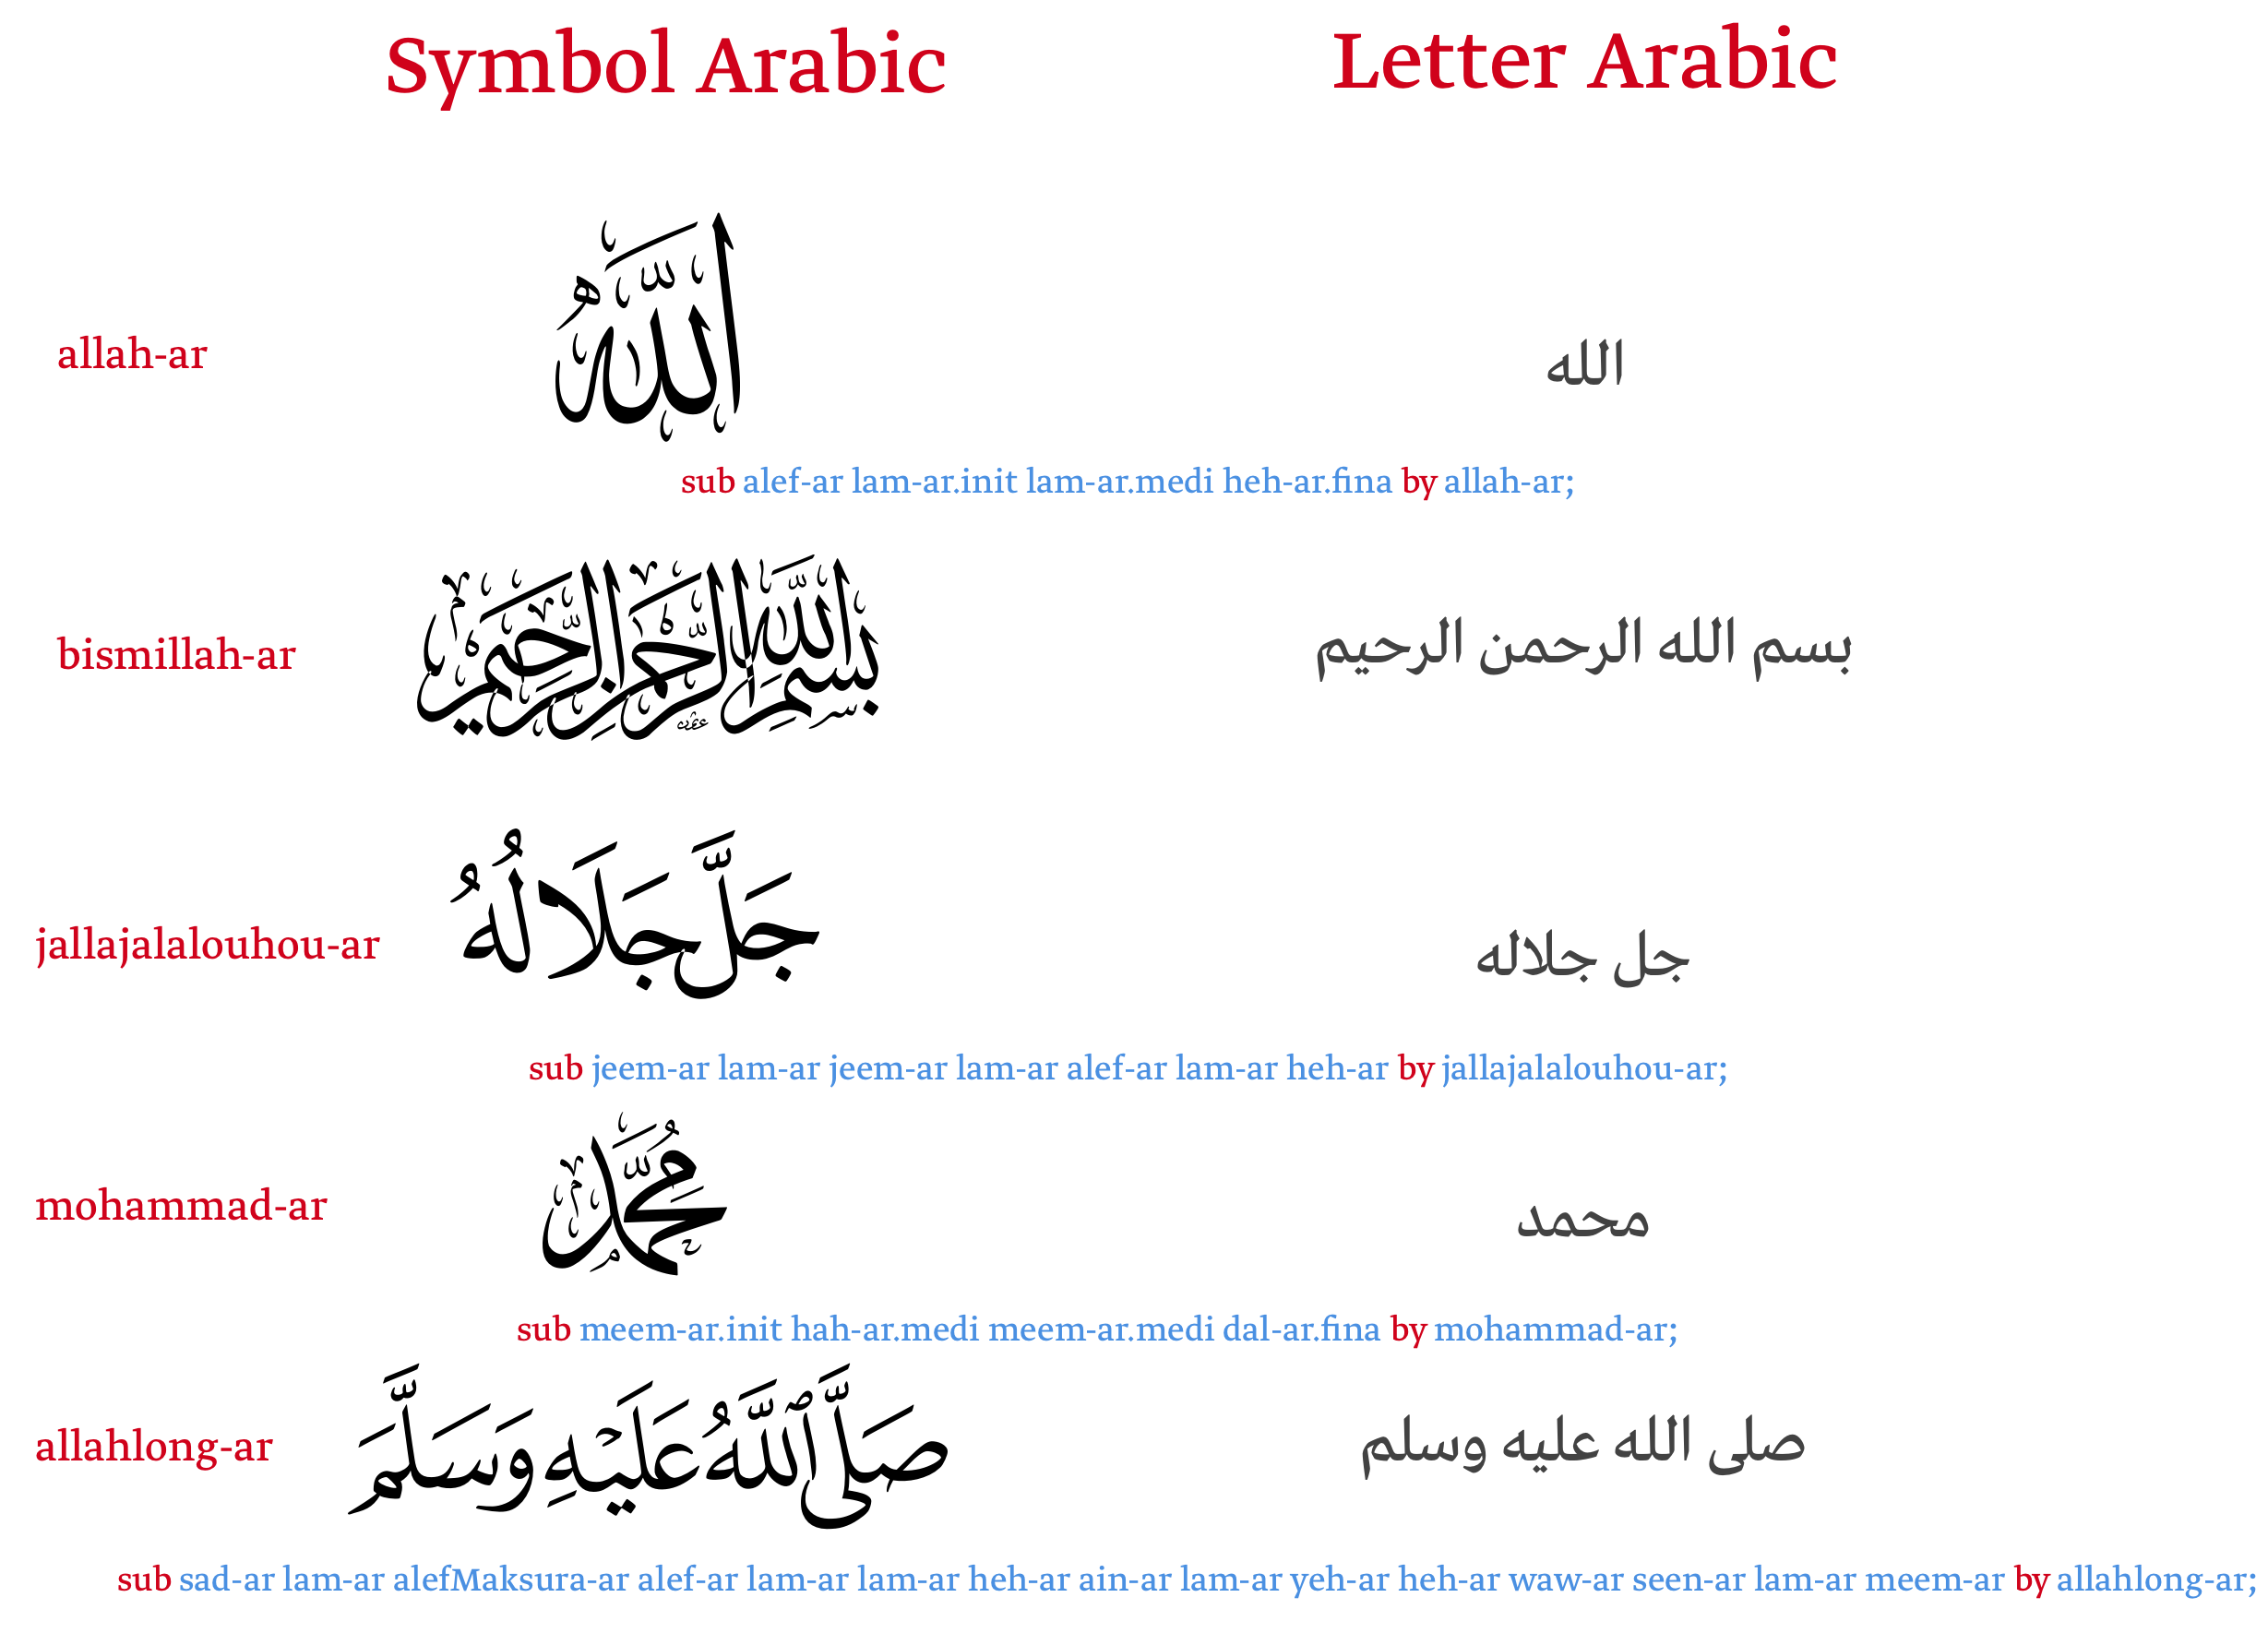 Allah swt in arabic